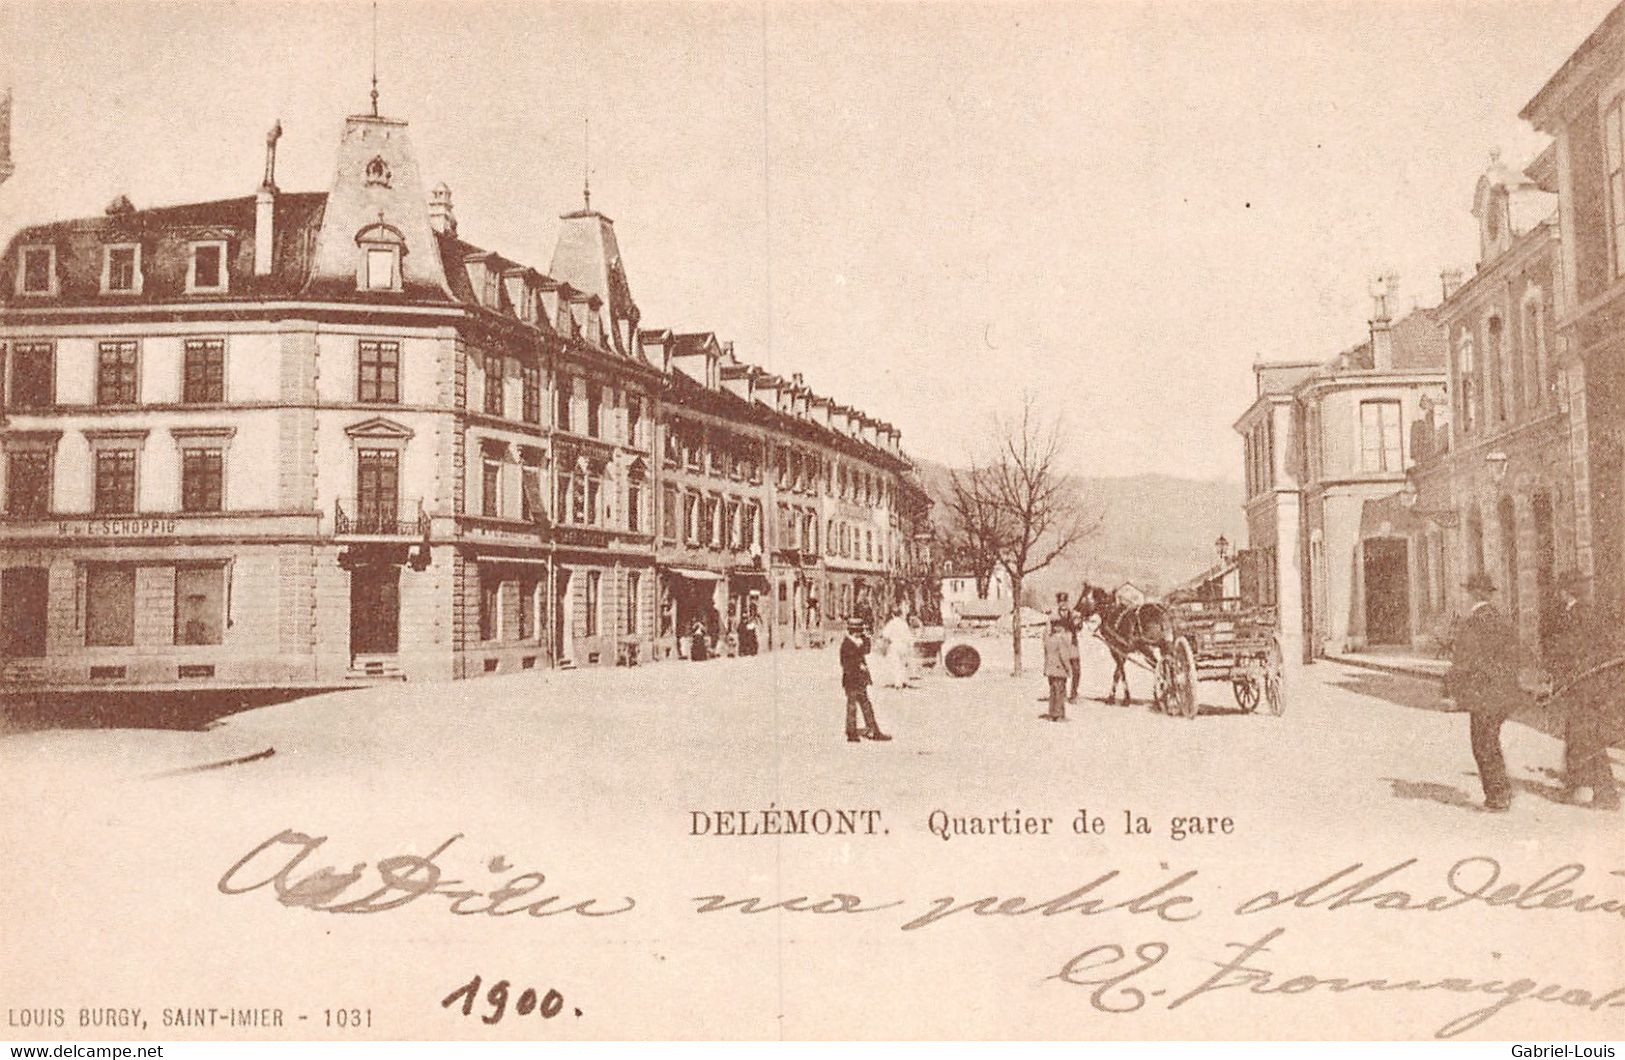 Reprocuction 16 anciennes cartes postales de Delémont - Complet